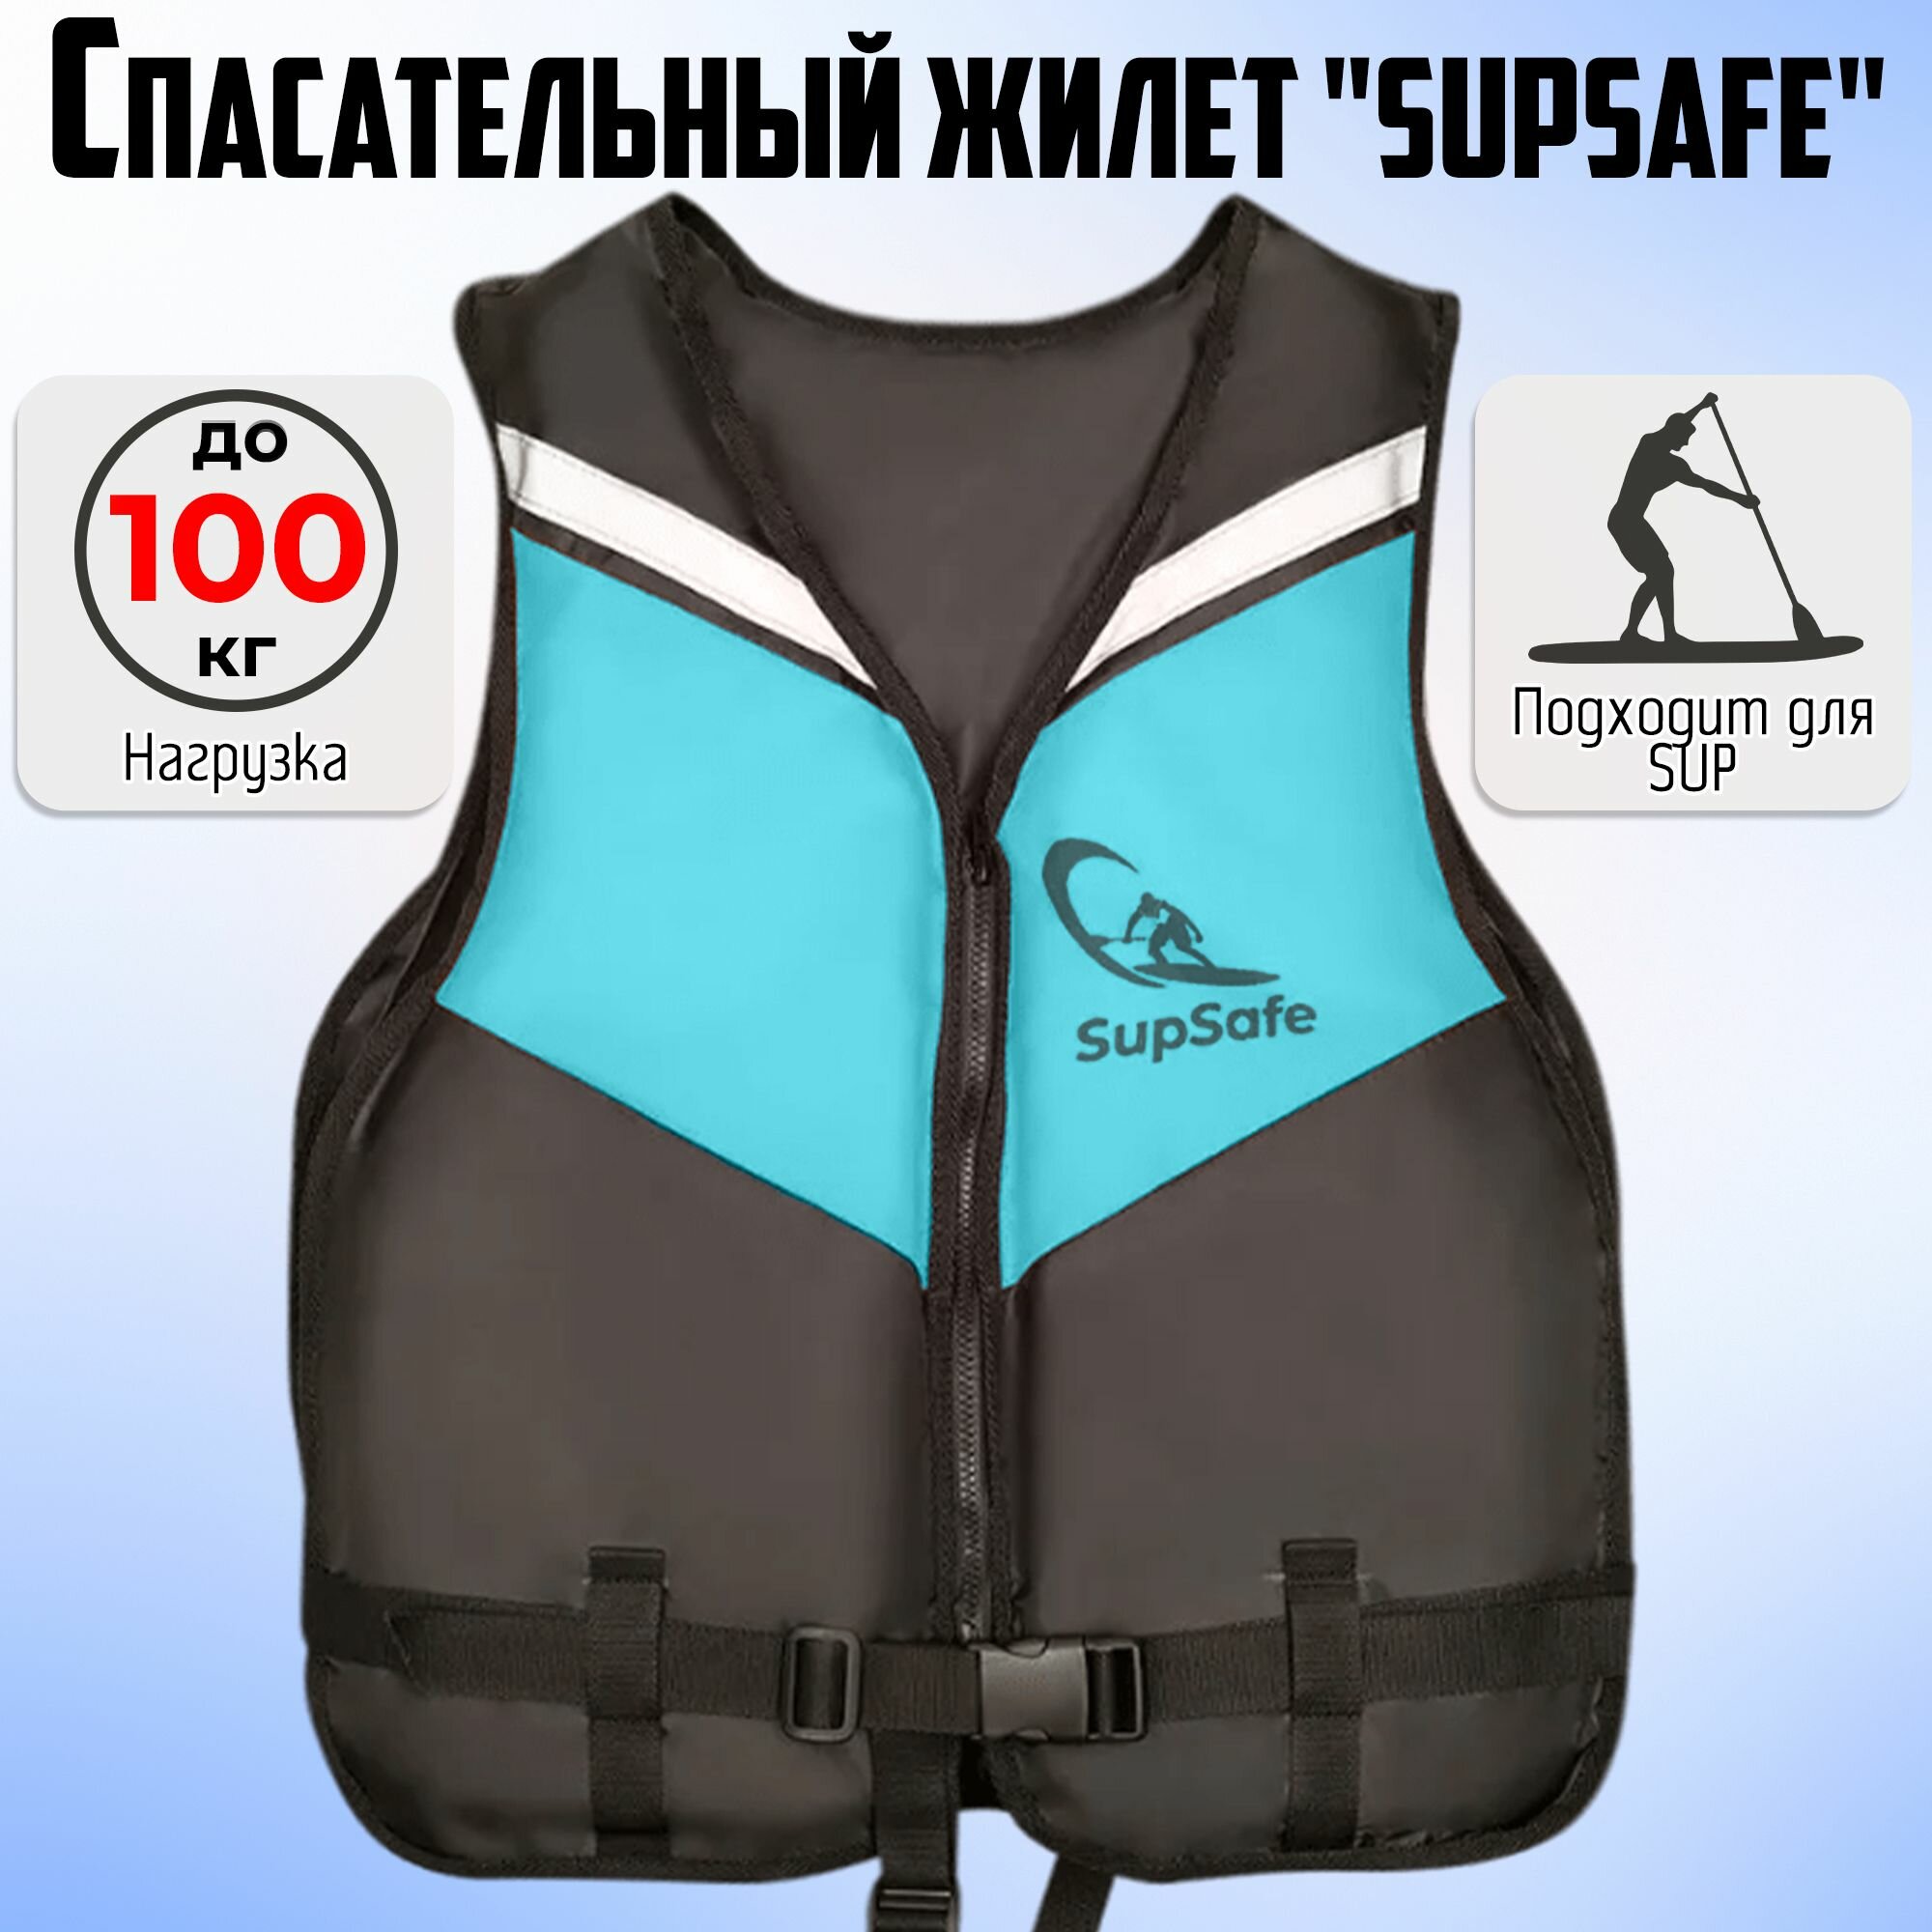 Спасательный жилет SupSafe до 100 кг, 50-52 черный; бирюзовый